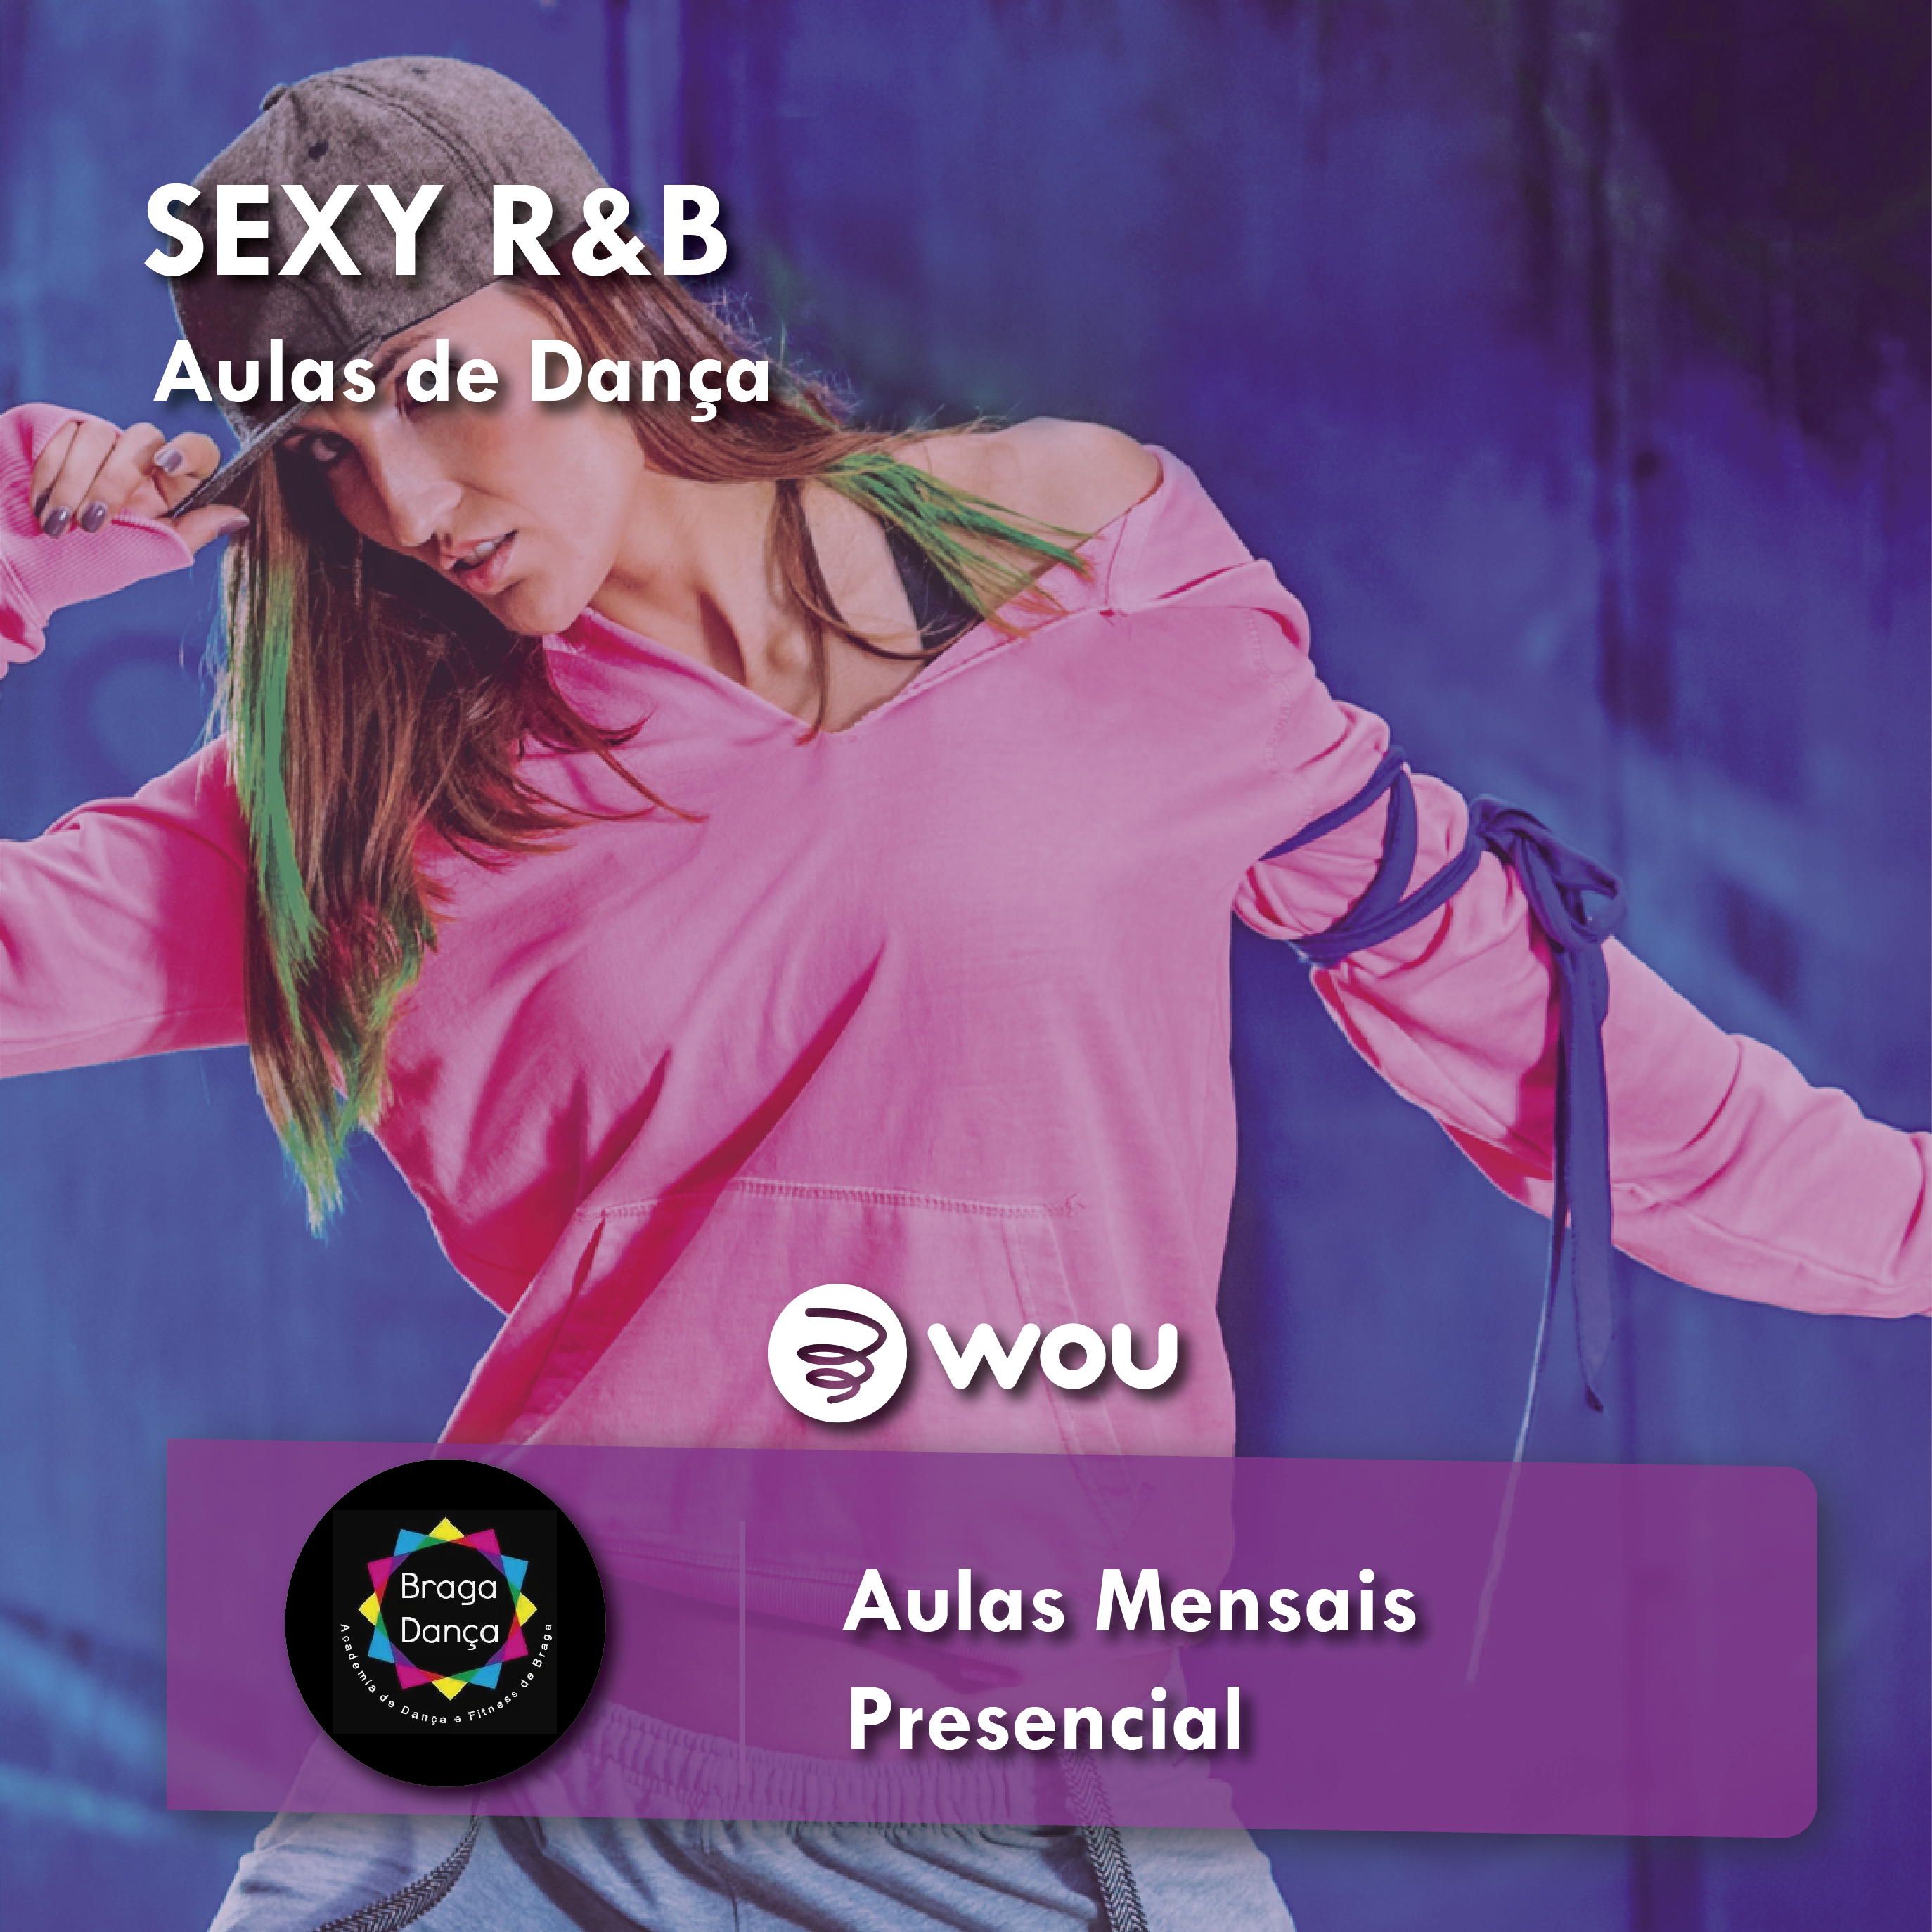 Aulas de Sexy R&B em Braga